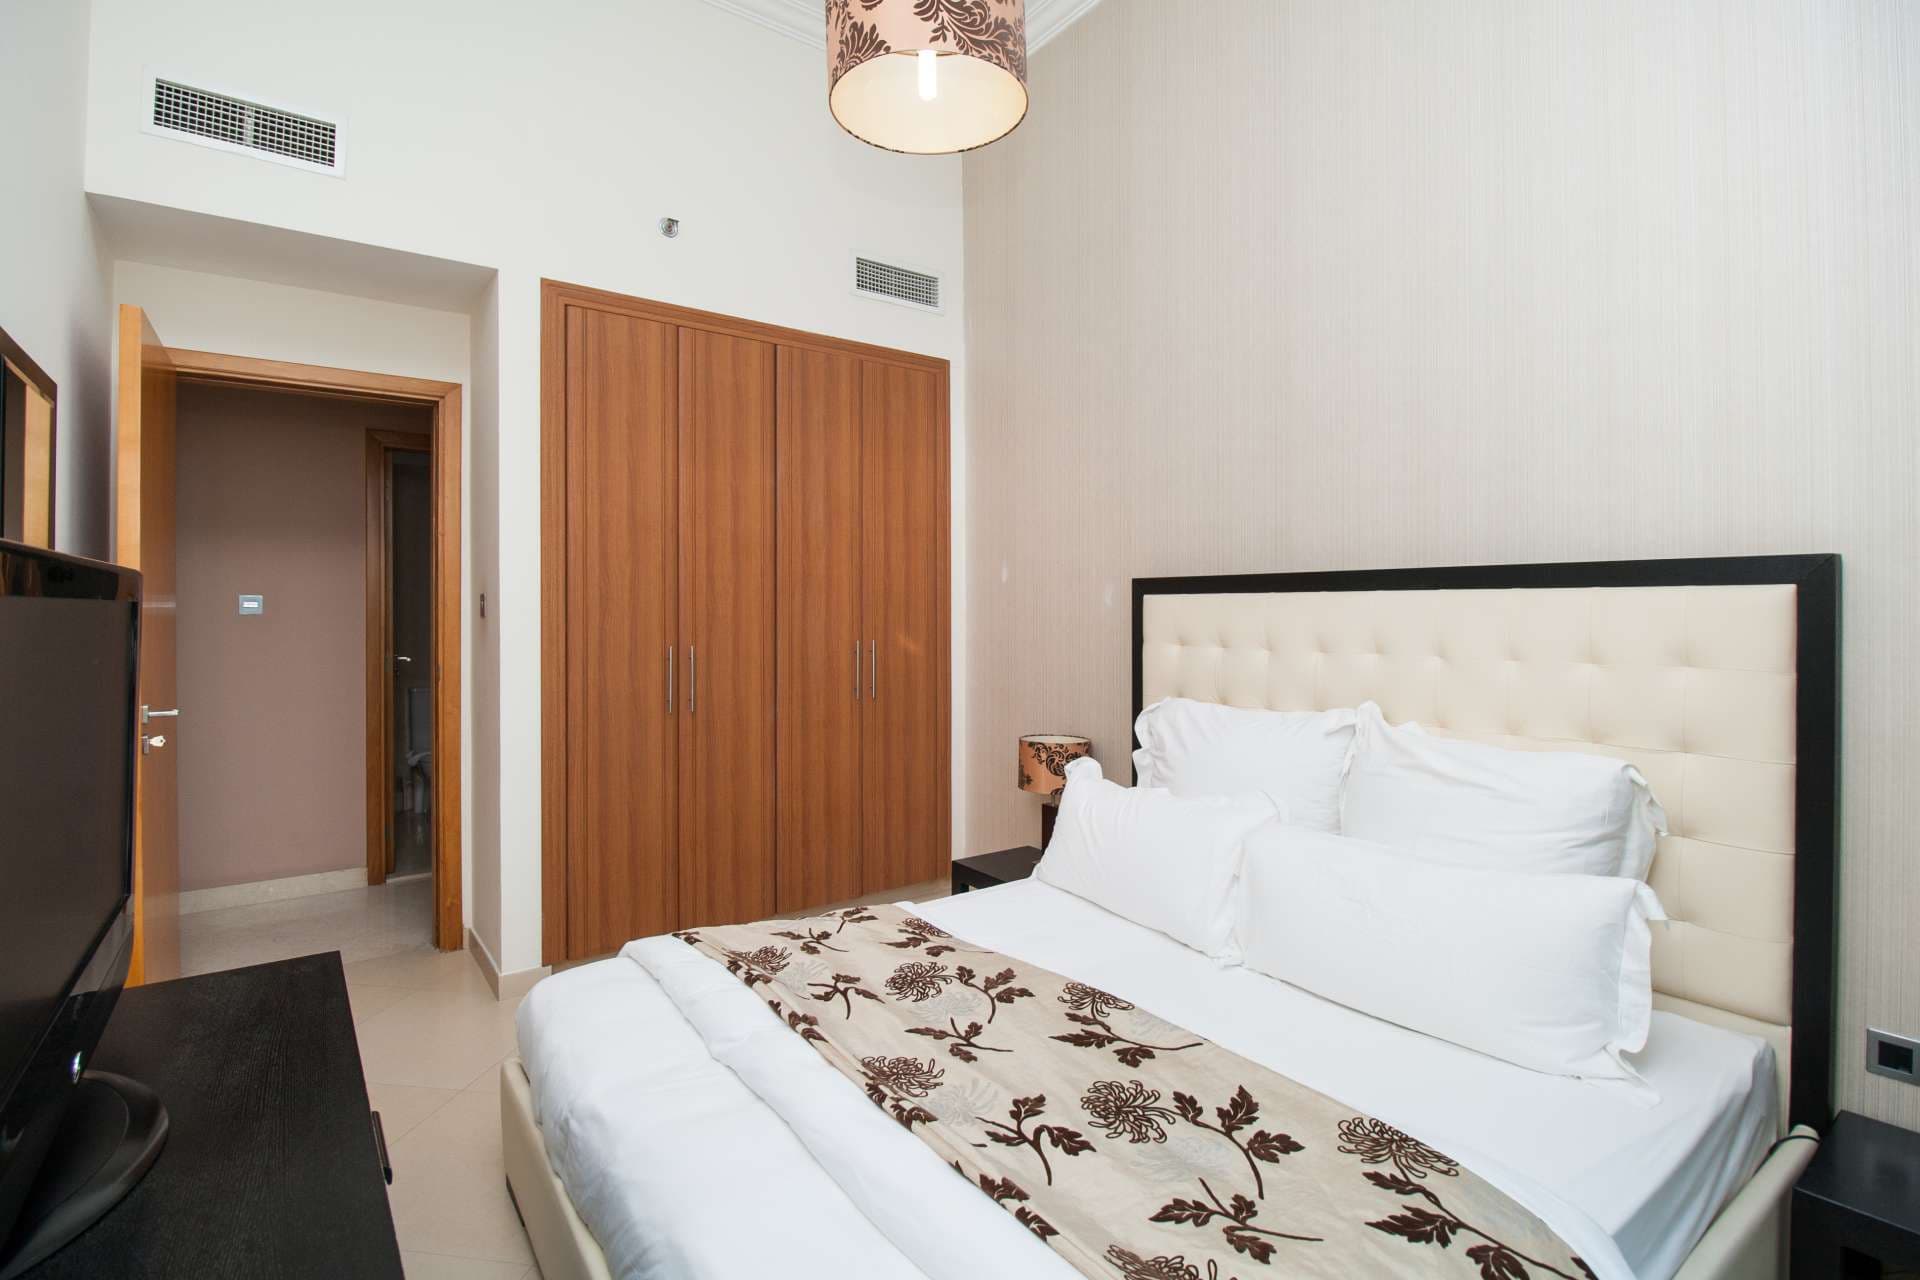 2 Bedroom Apartment For Rent Dorra Bay Lp04870 16d19bd2207c3f00.jpg